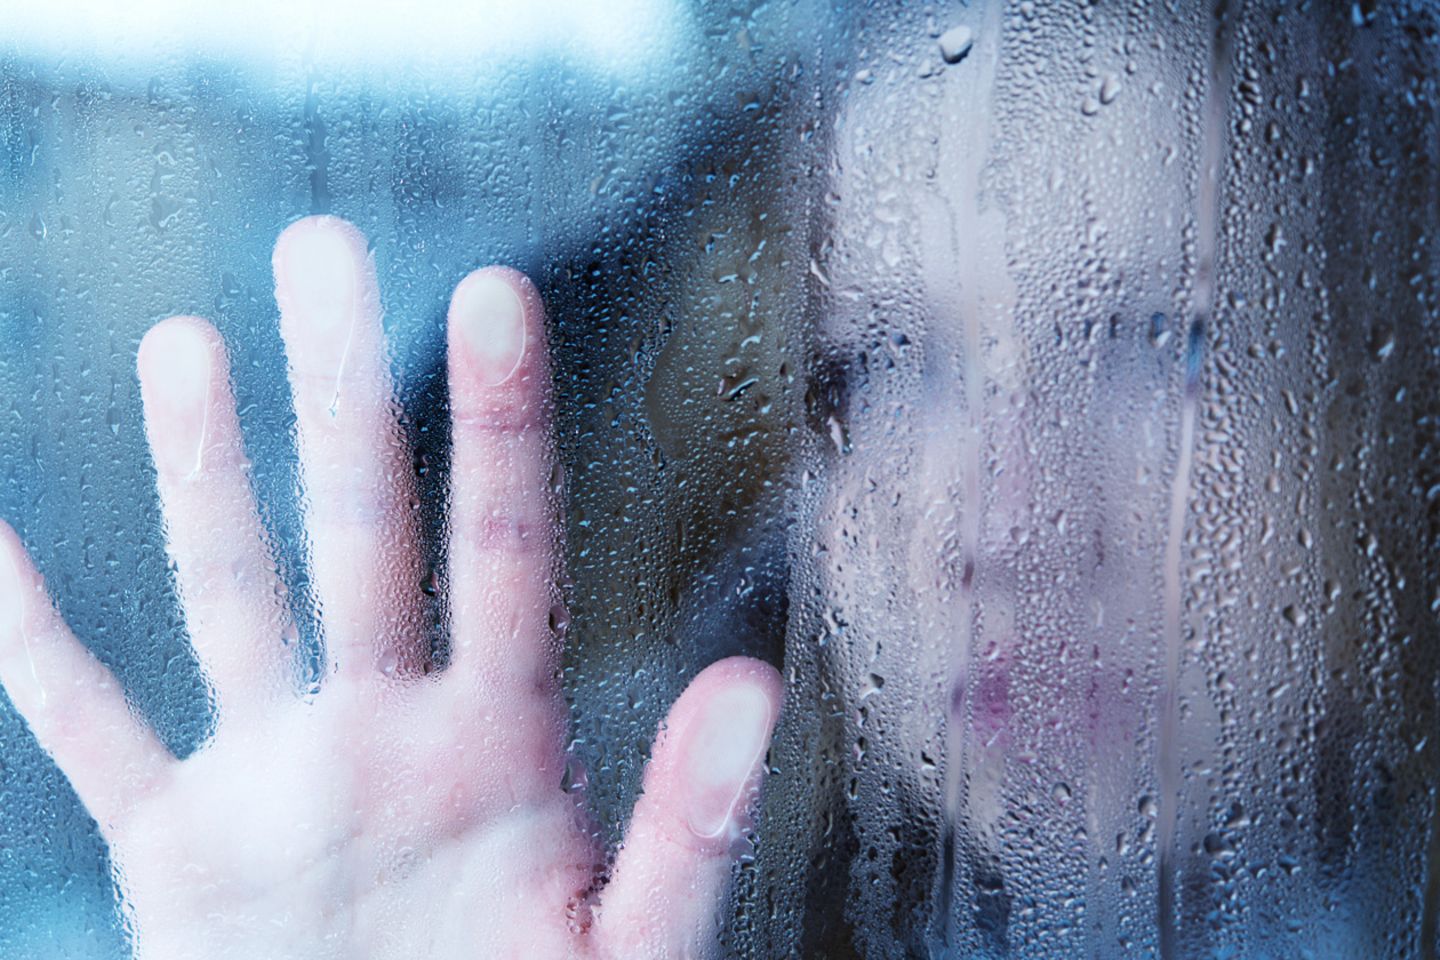 Manche Depressive fühlen sich, als wären sie "in einem Glaskasten gefangen".